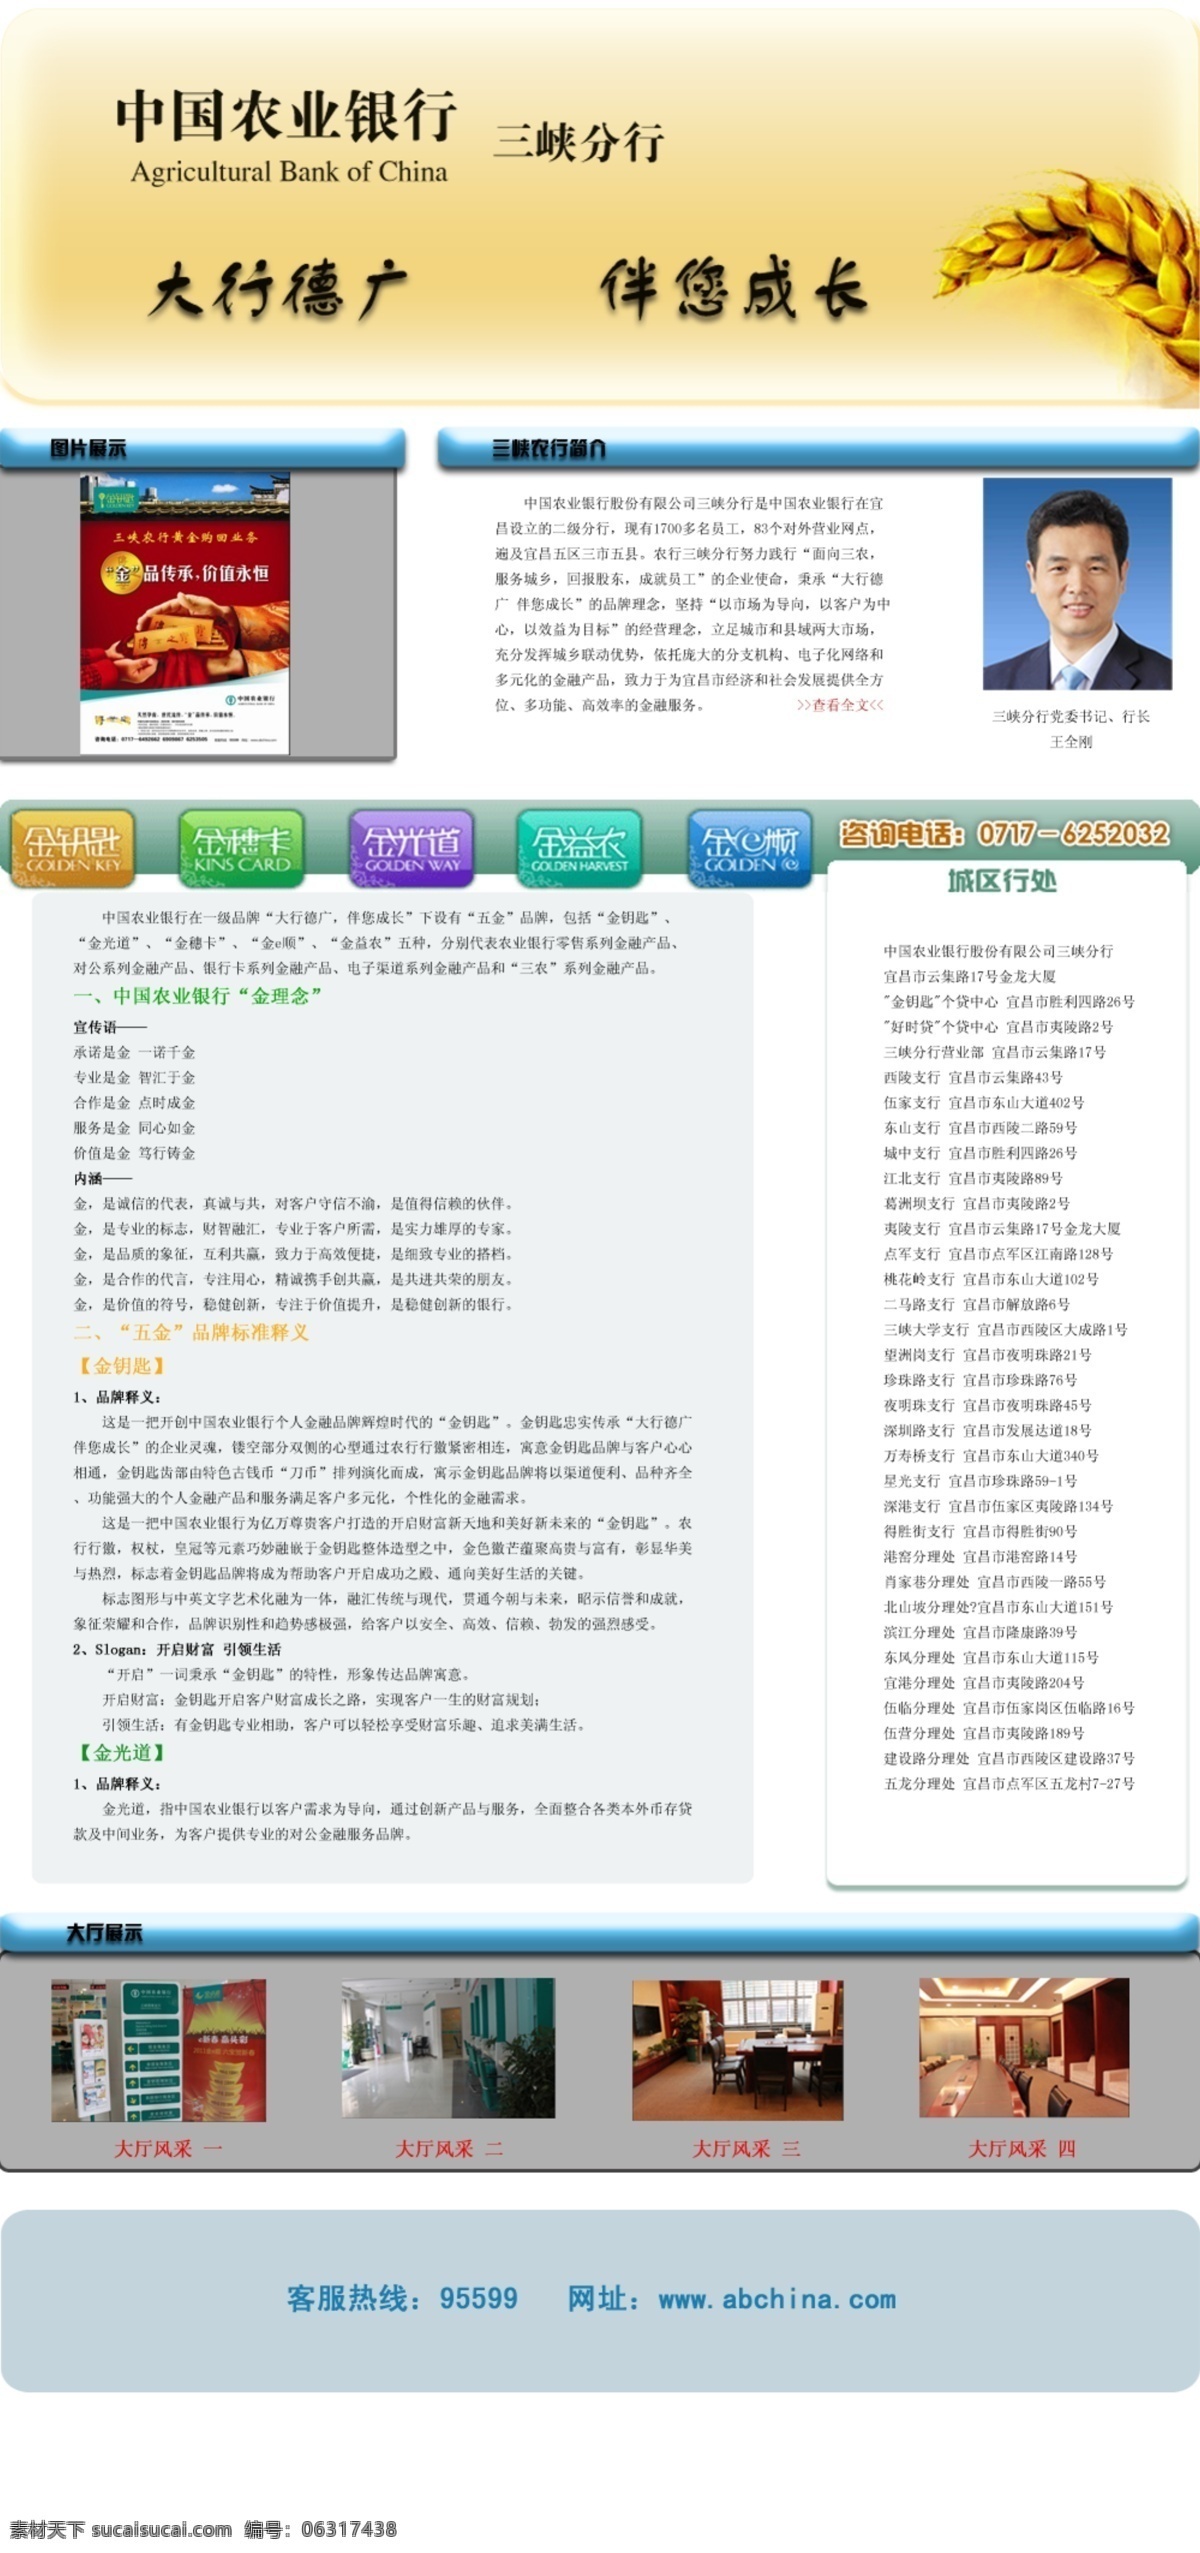 农业银行 网页设计 banner 标语 稻穗 网页模板 源文件 中文模版 网页素材